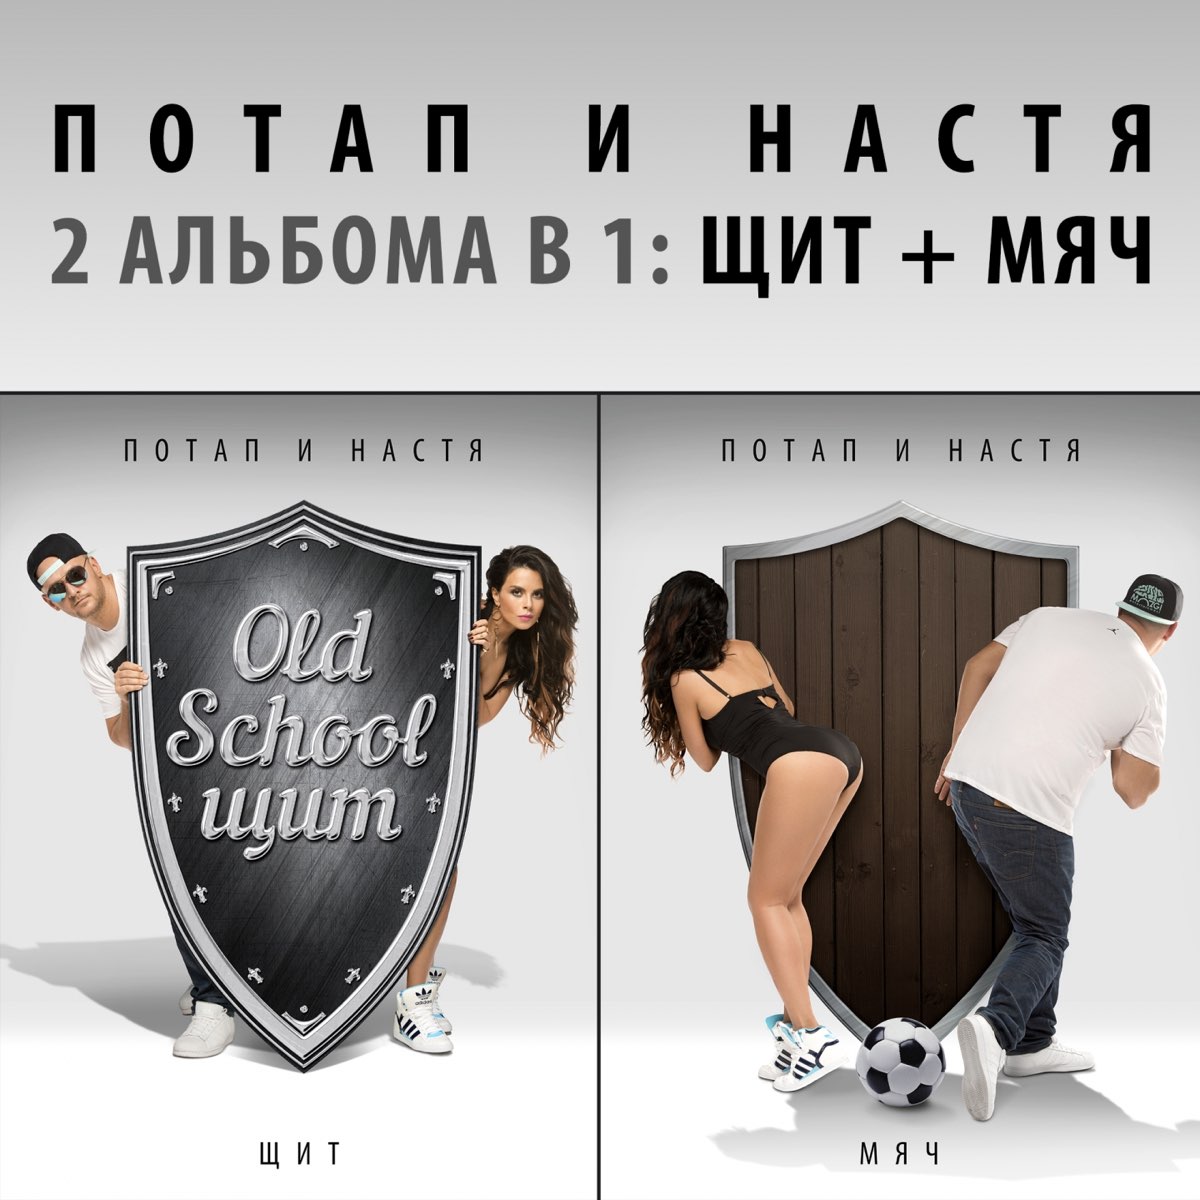 Потап и Настя - Щит И Мяч (2015)